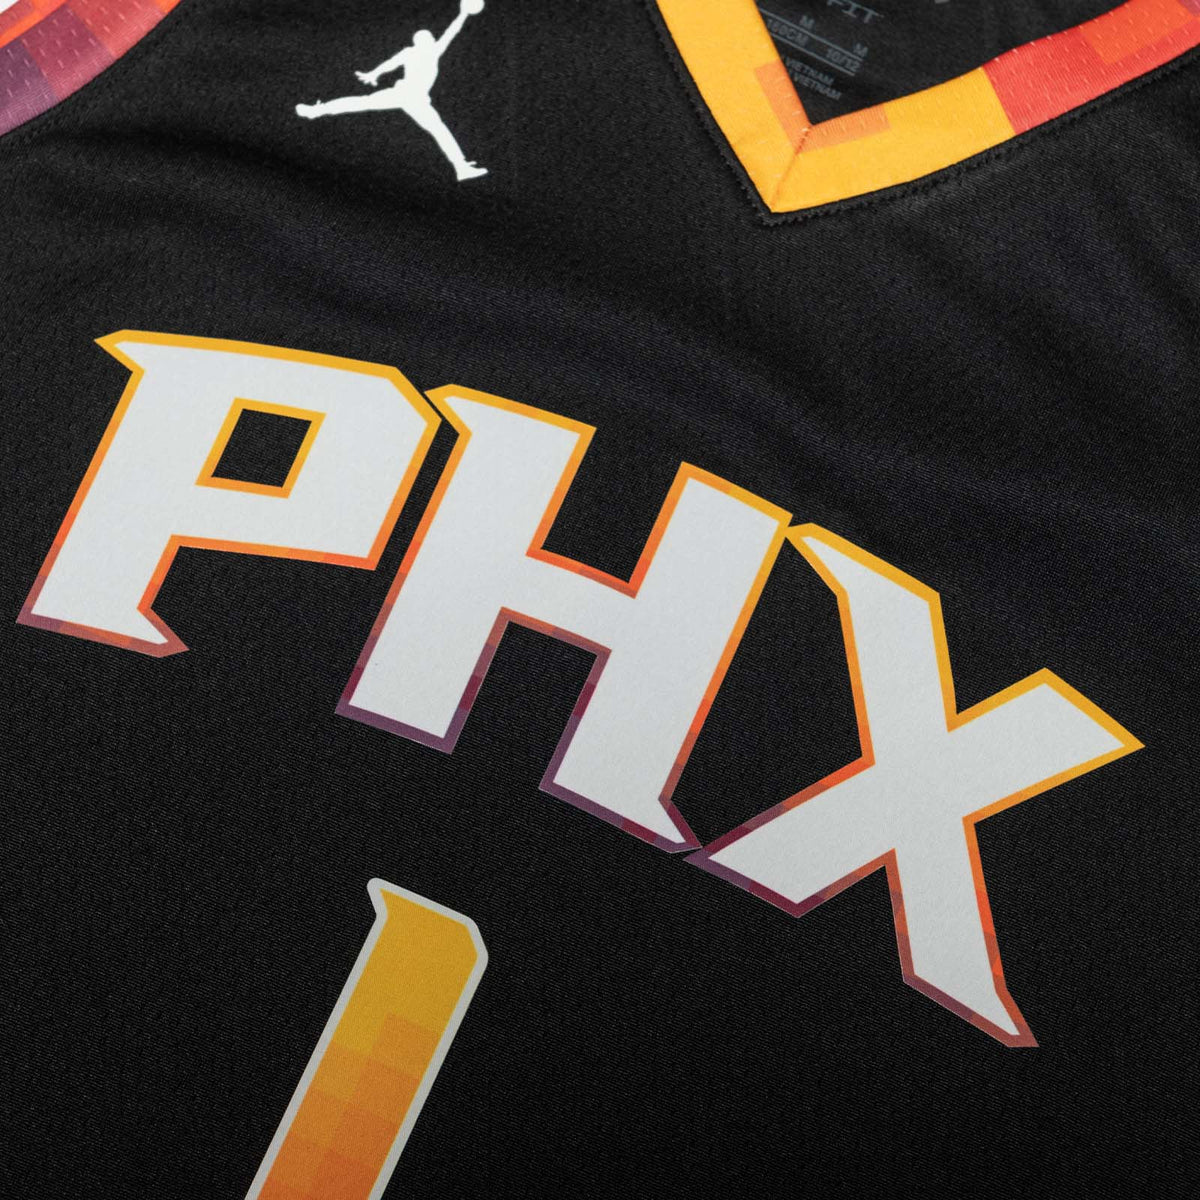 Phoenix Suns Swingman Black Devin Booker Jersey - Statement